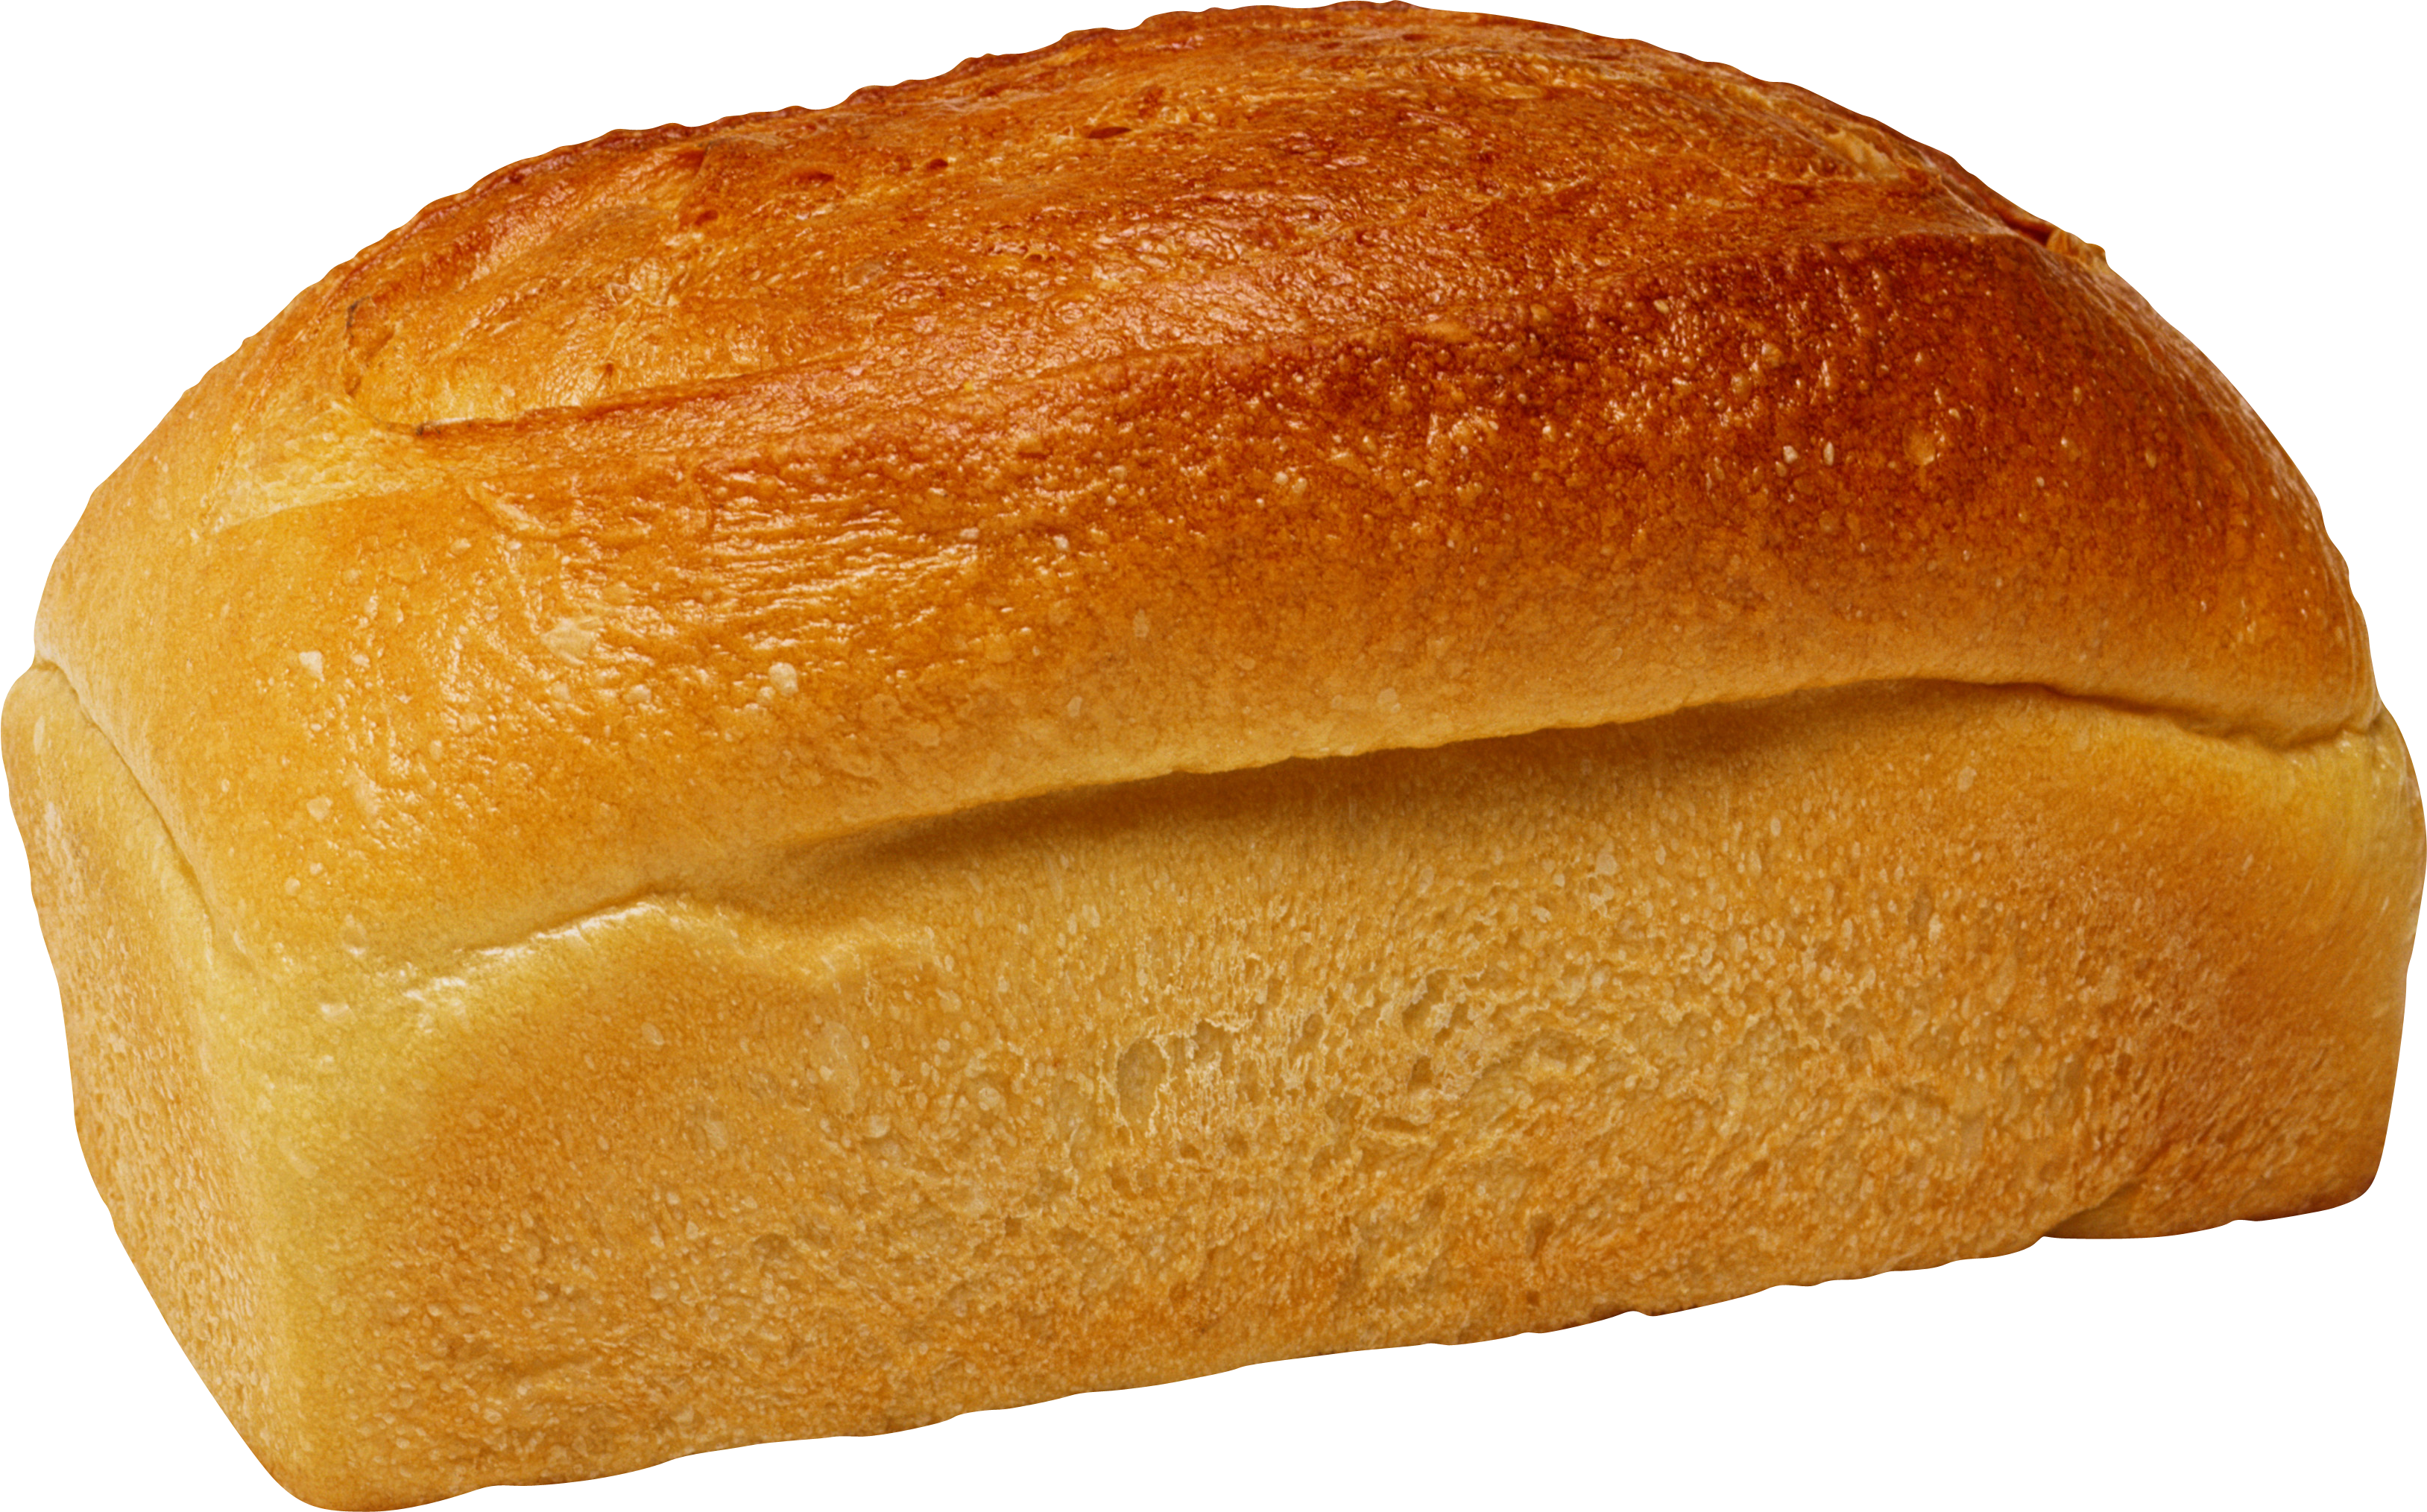 Toast full bread